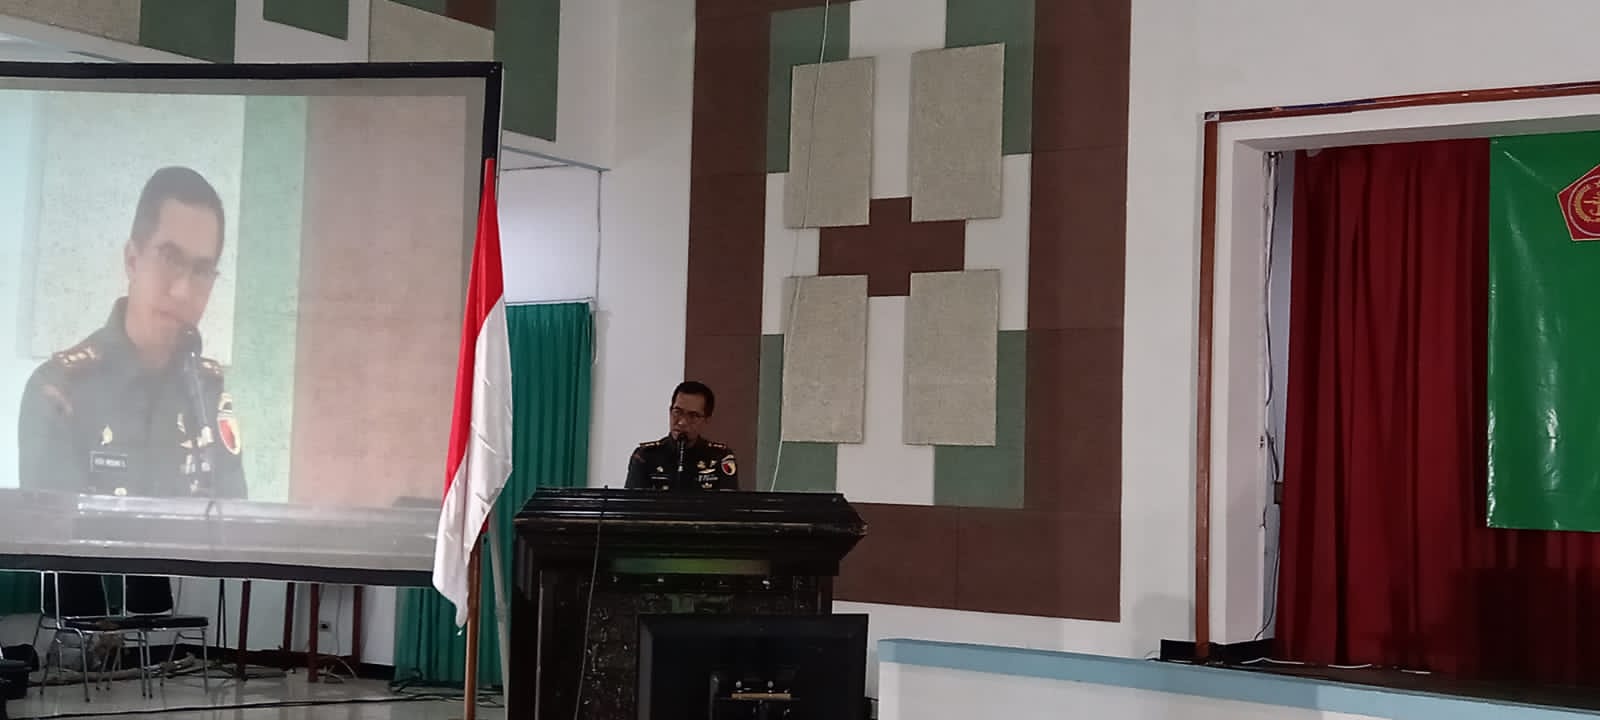 Dandim 0833/Kota Malang Letkol Kav Heru Wibowo Sofa SH MHan memberikan sambutan dalam Seminar Keabngsaan. Foto: Ist